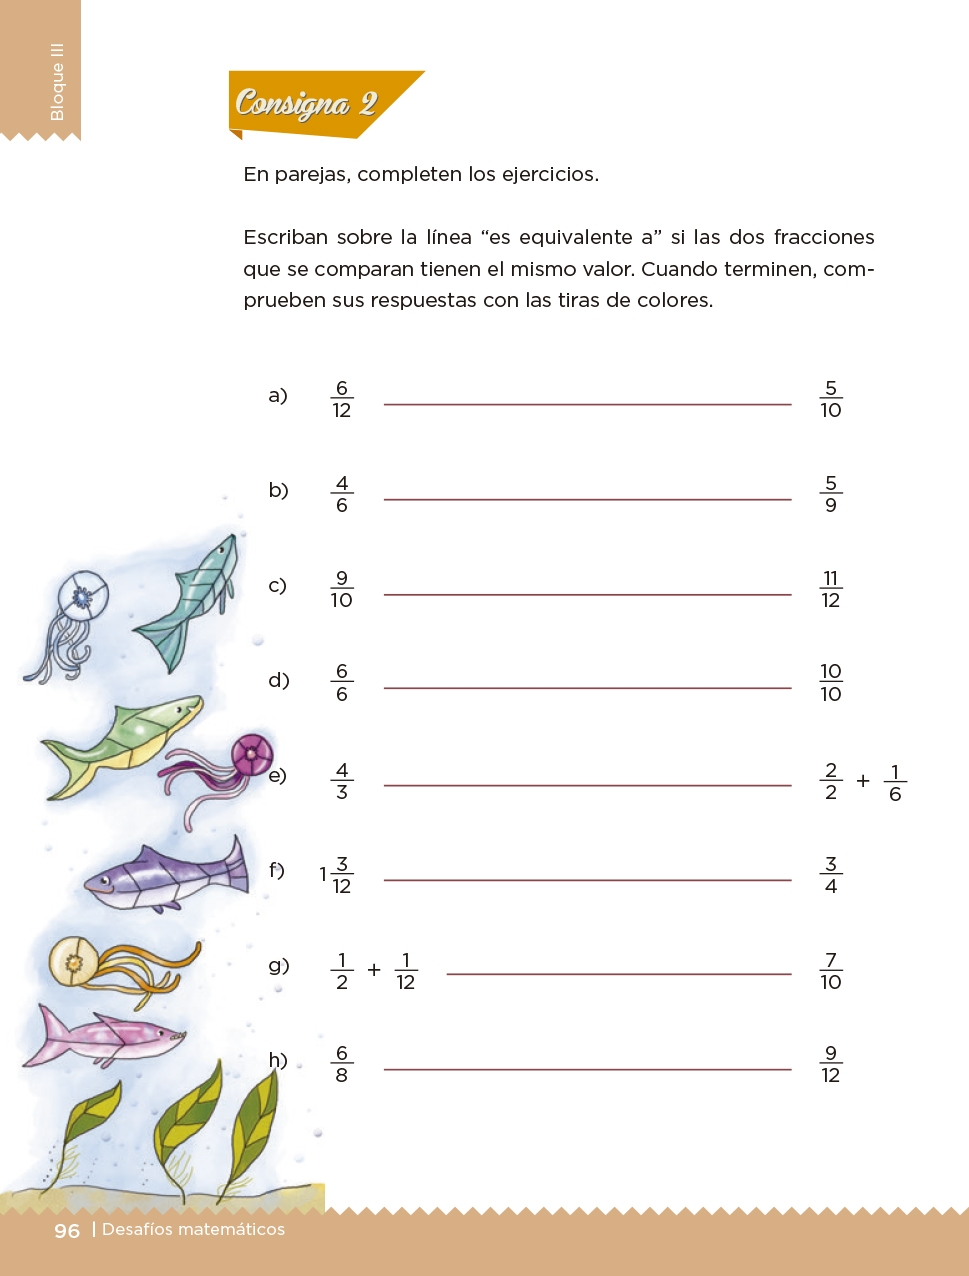 Desafíos Matemáticos Libro para el alumno Cuarto grado 2017-2018 - Página 96 - Libros de Texto ...